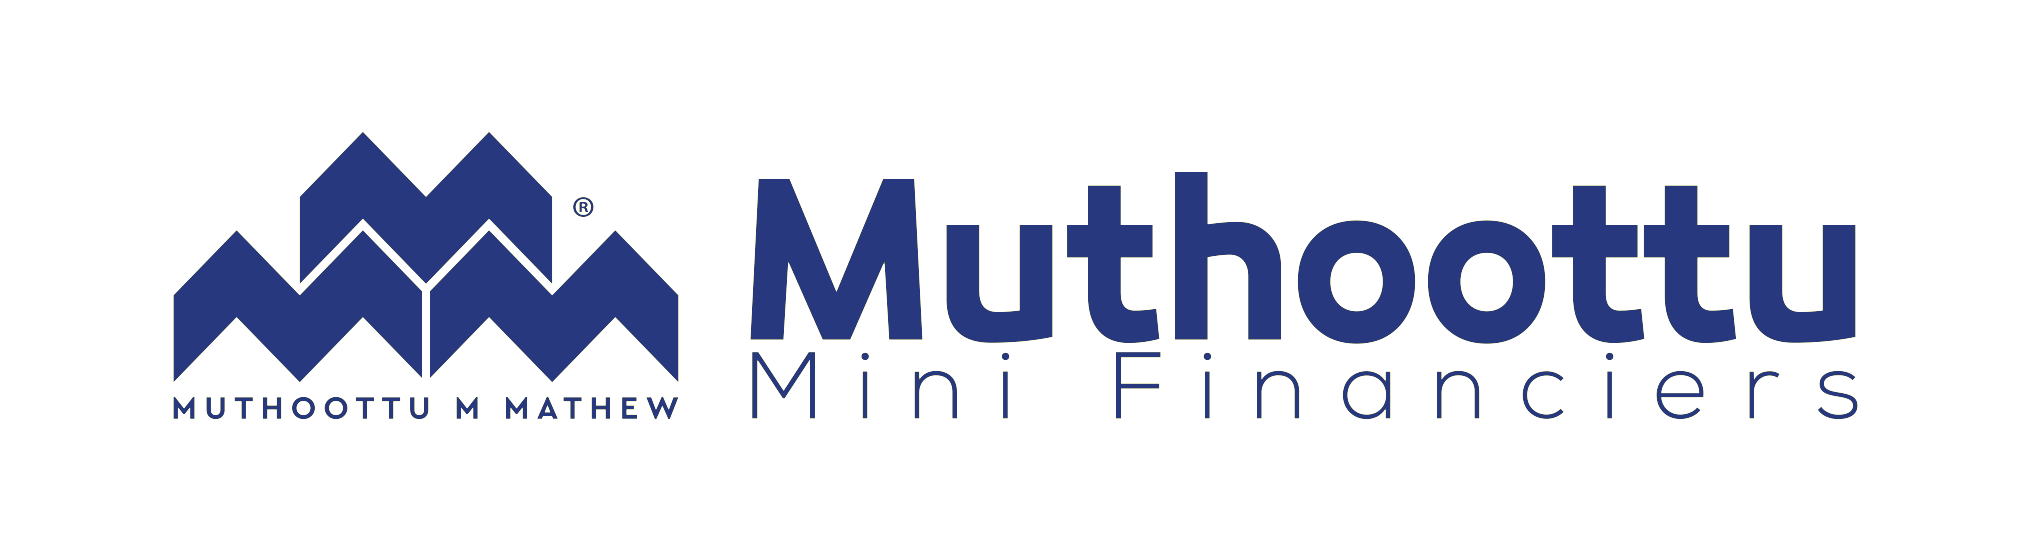 Muthoottu Mini